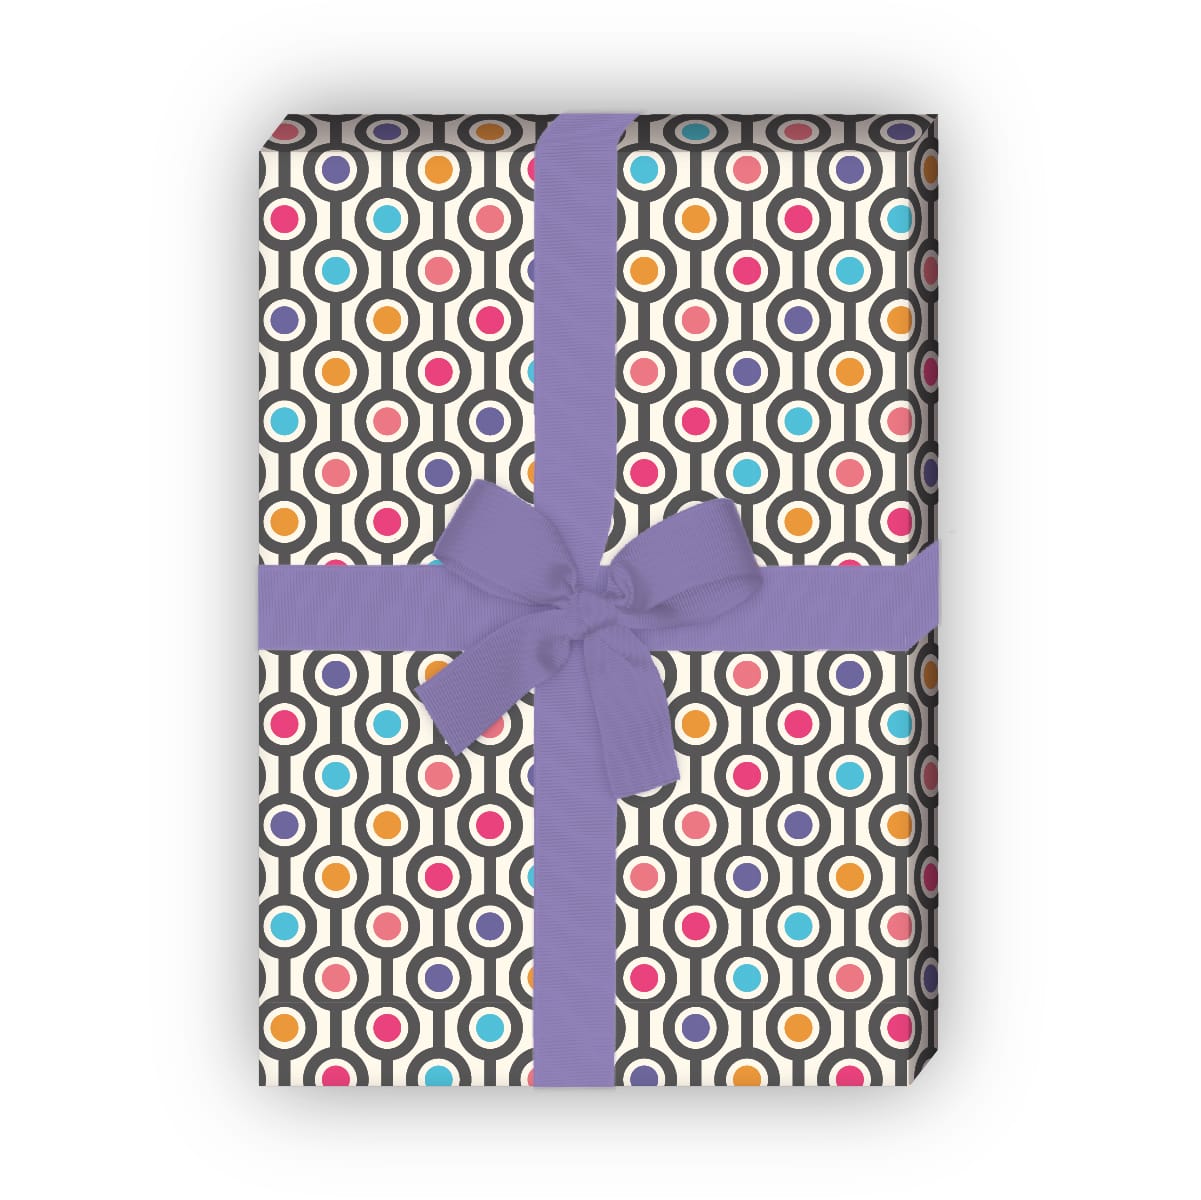 Kartenkaufrausch: Cooles Retro Punkte Geschenkpapier aus unserer Geburtstags Papeterie in pink